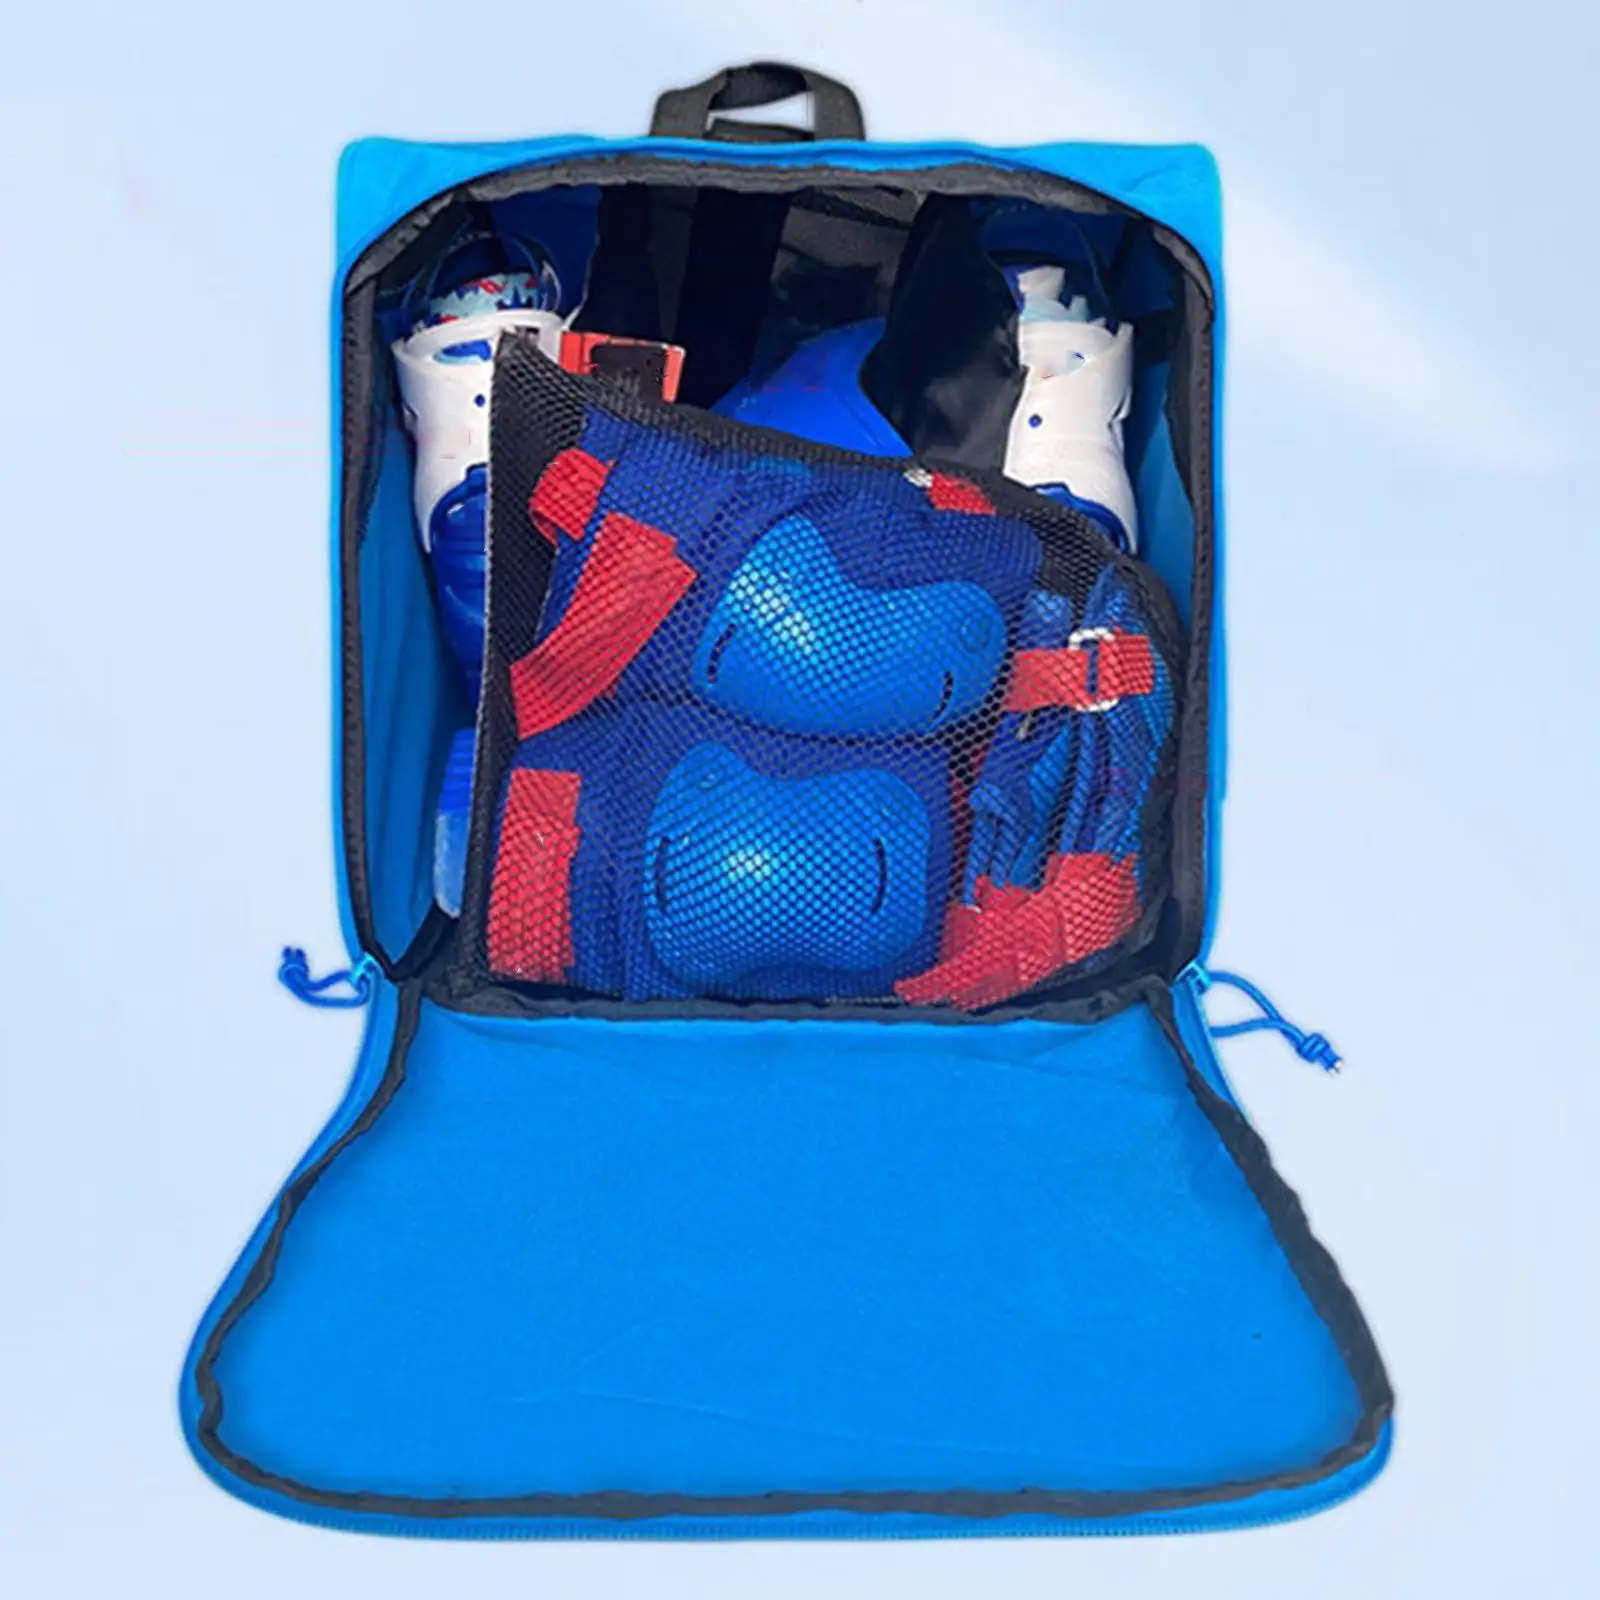 Roller Skate Bag for Kids and Adults Skating Shoes Storage Bag Skating Bag